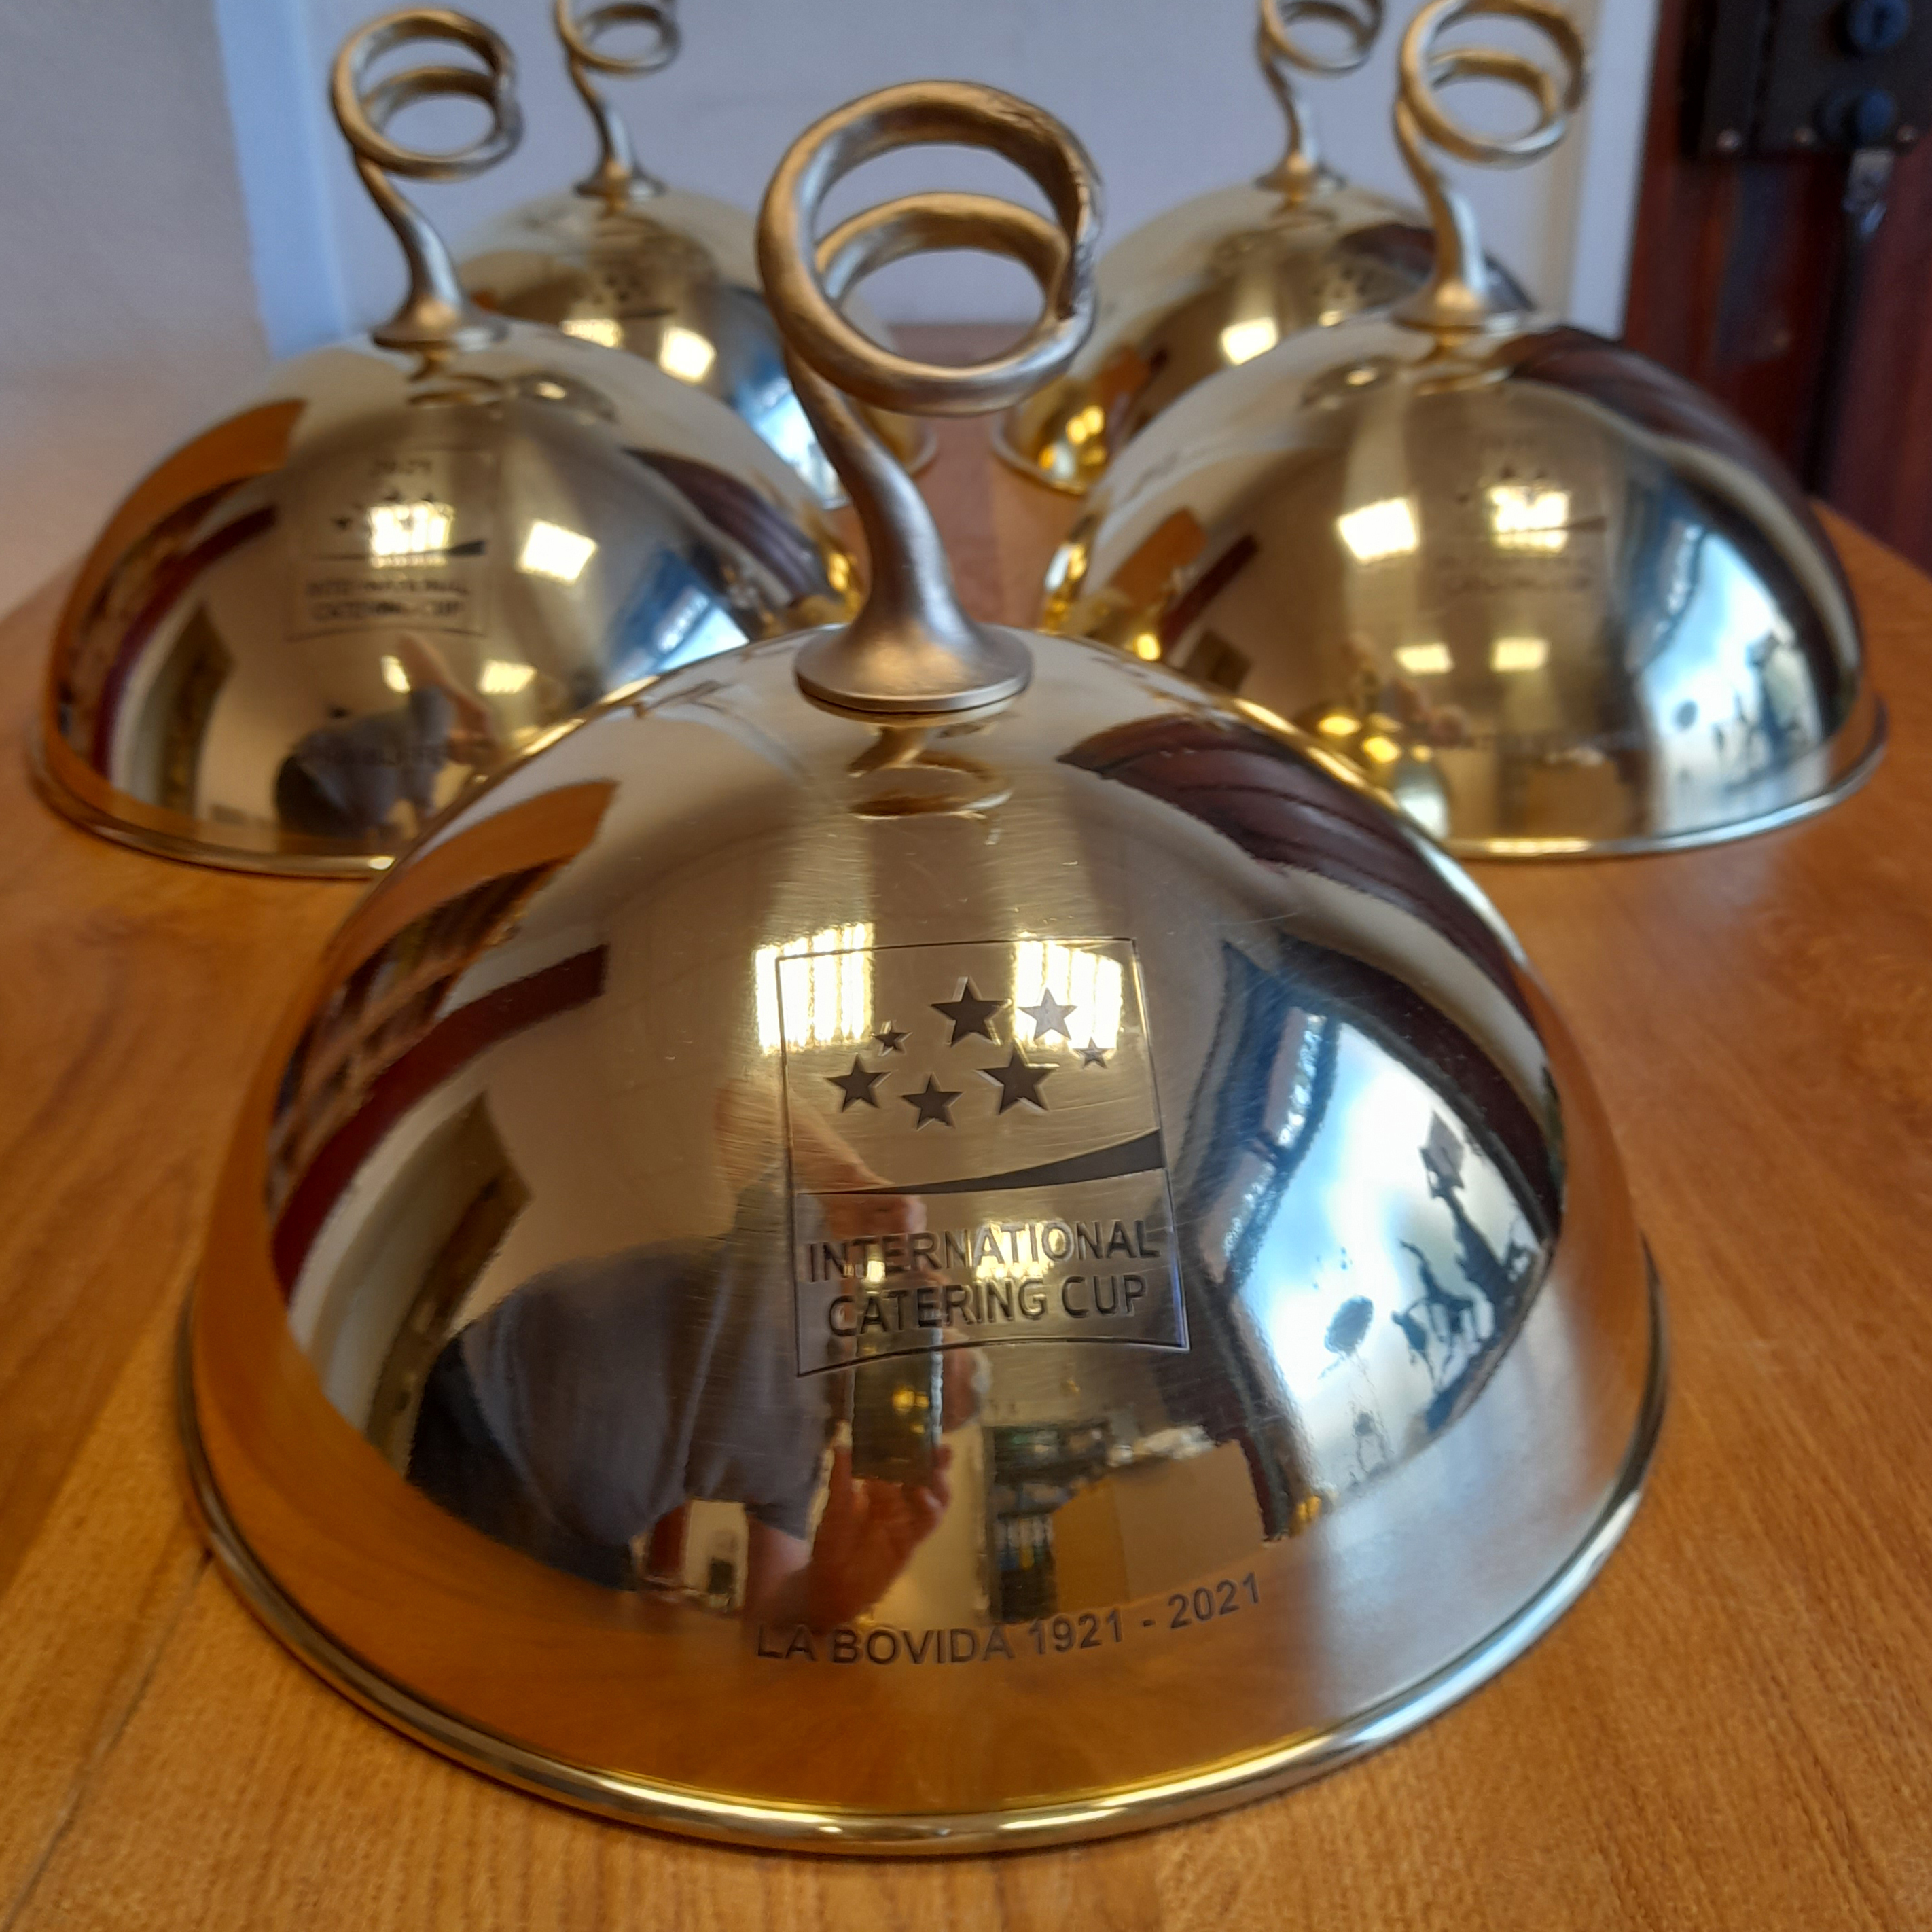 Trophées "cloches" en bronze, réalisés à l'ocasion de L'International Catering Cup 2021